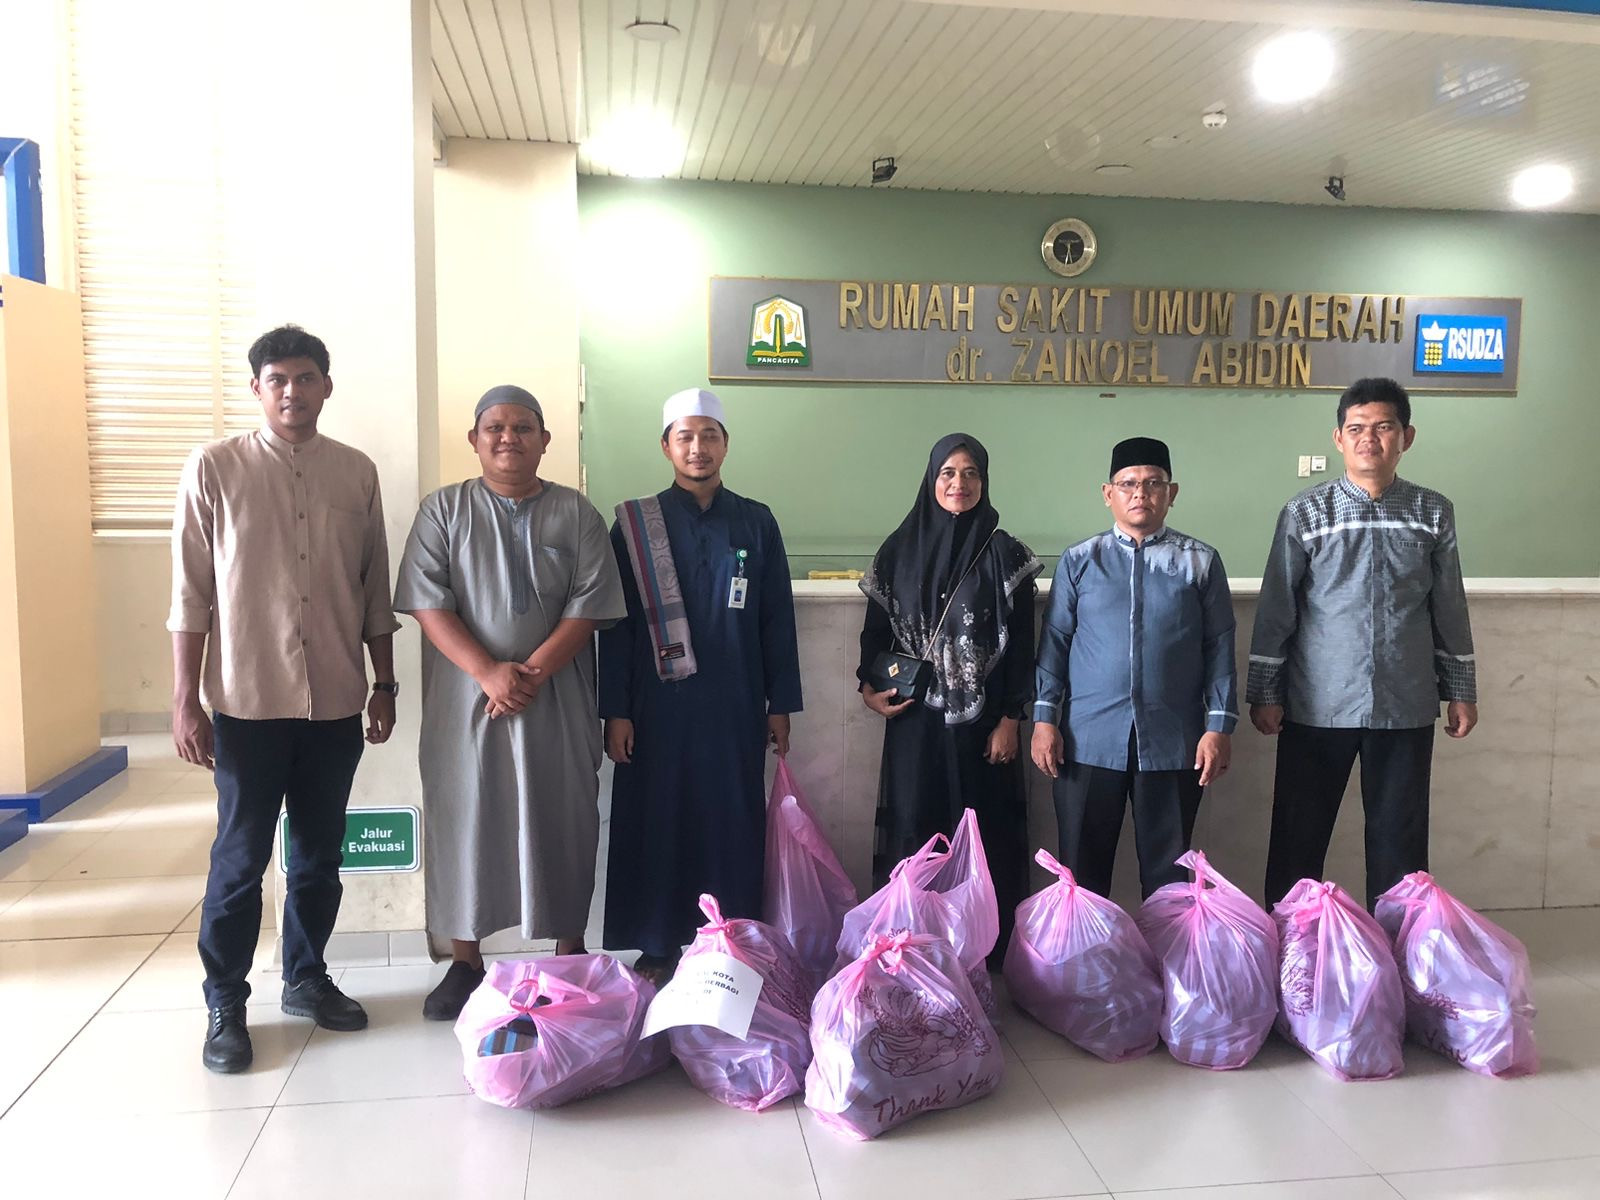 Baitul Mal Banda Aceh Bagikan 100 Paket  Takjil Setiap Jum'at